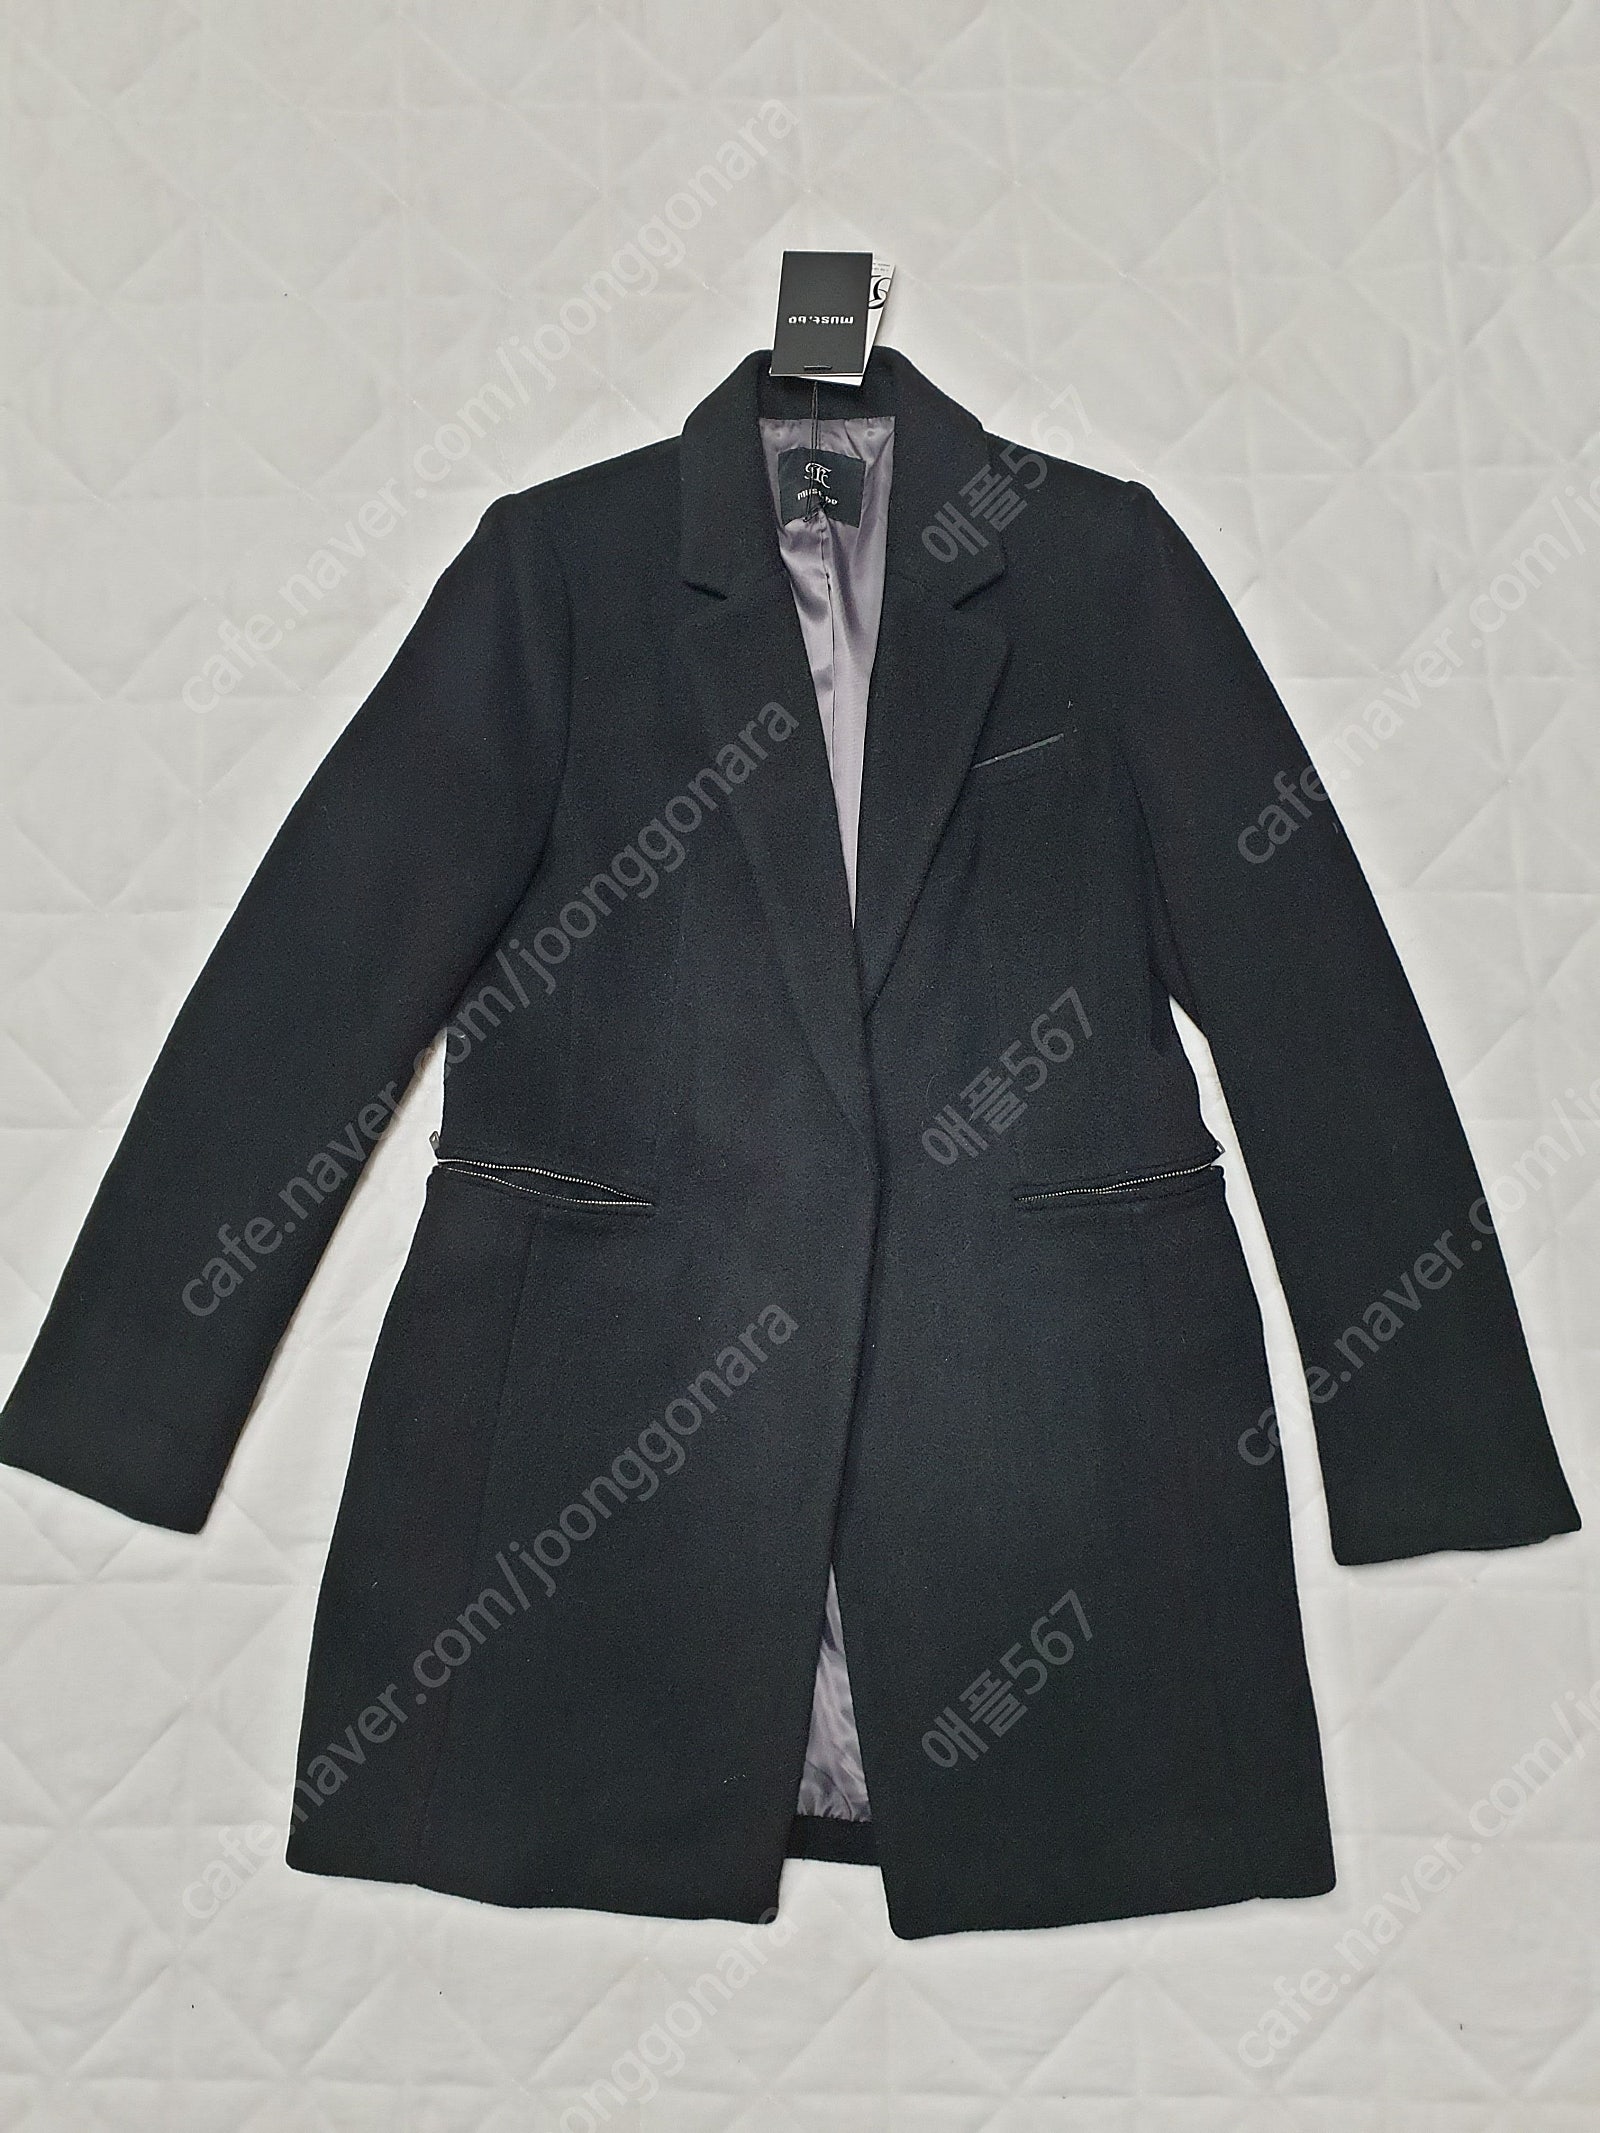 머스트비 모혼방 코트 새옷 / Enc 블라우스형 자켓 / 사이즈66(여성88센티)